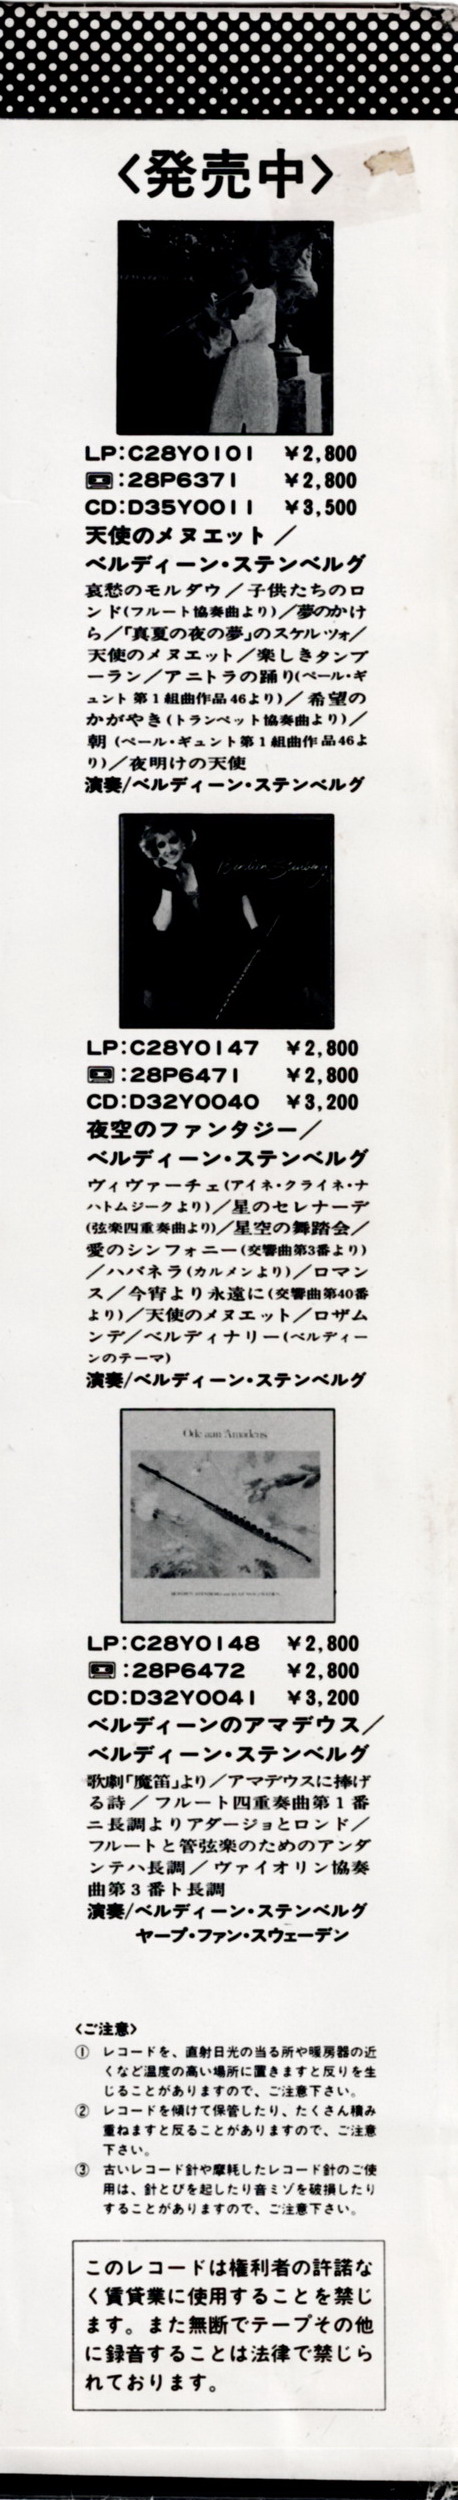 Discographie Japonaise - 3ème partie -  (33 T ORIGINAUX)  - Page 32 Jpn_2916